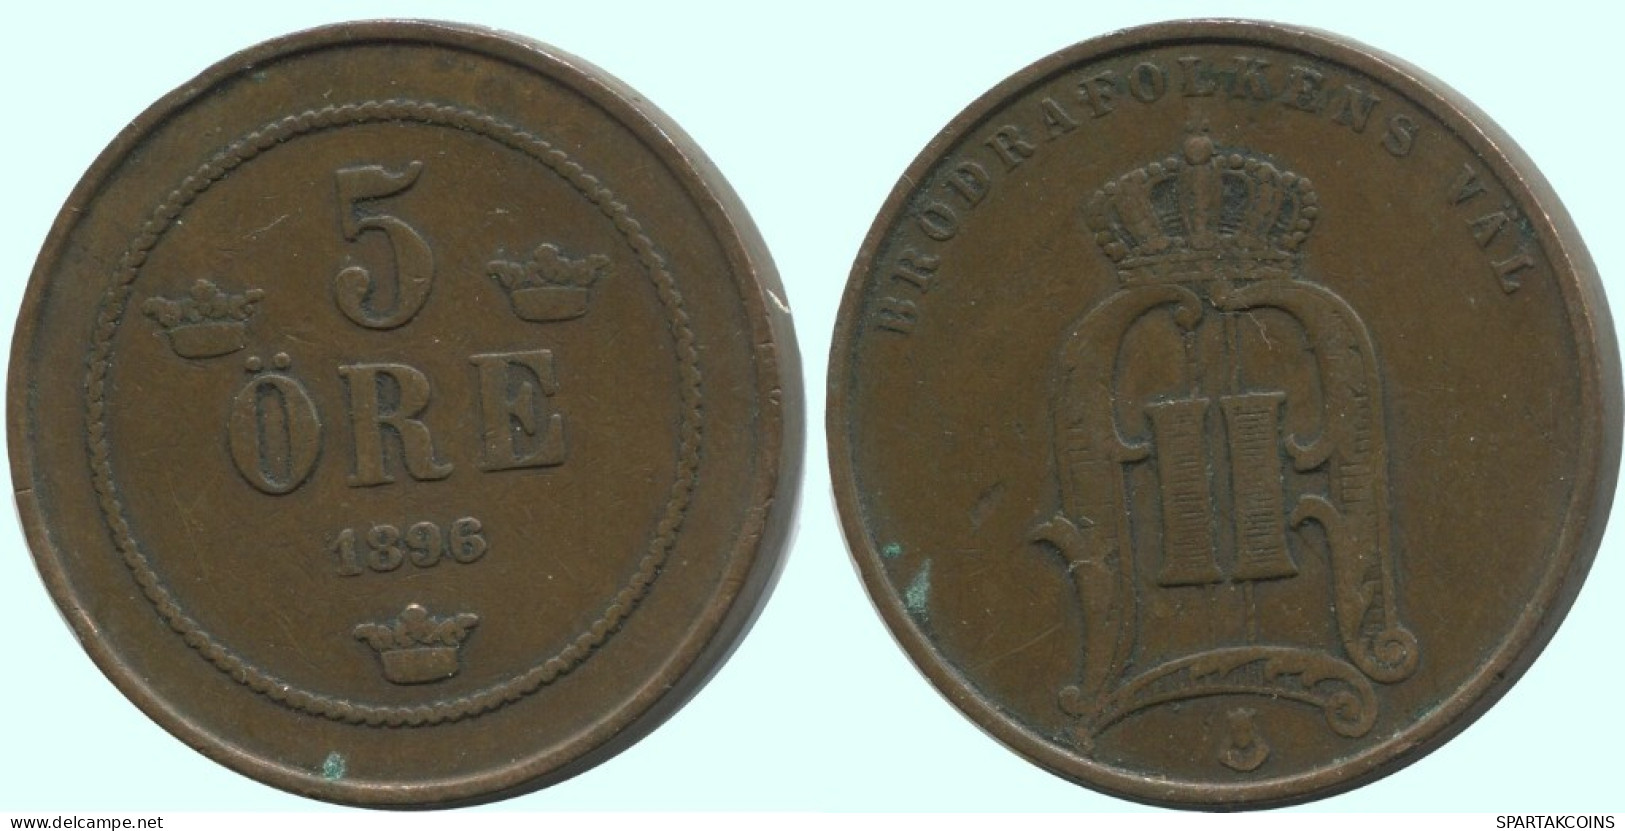 5 ORE 1896 SUECIA SWEDEN Moneda #AC654.2.E.A - Svezia